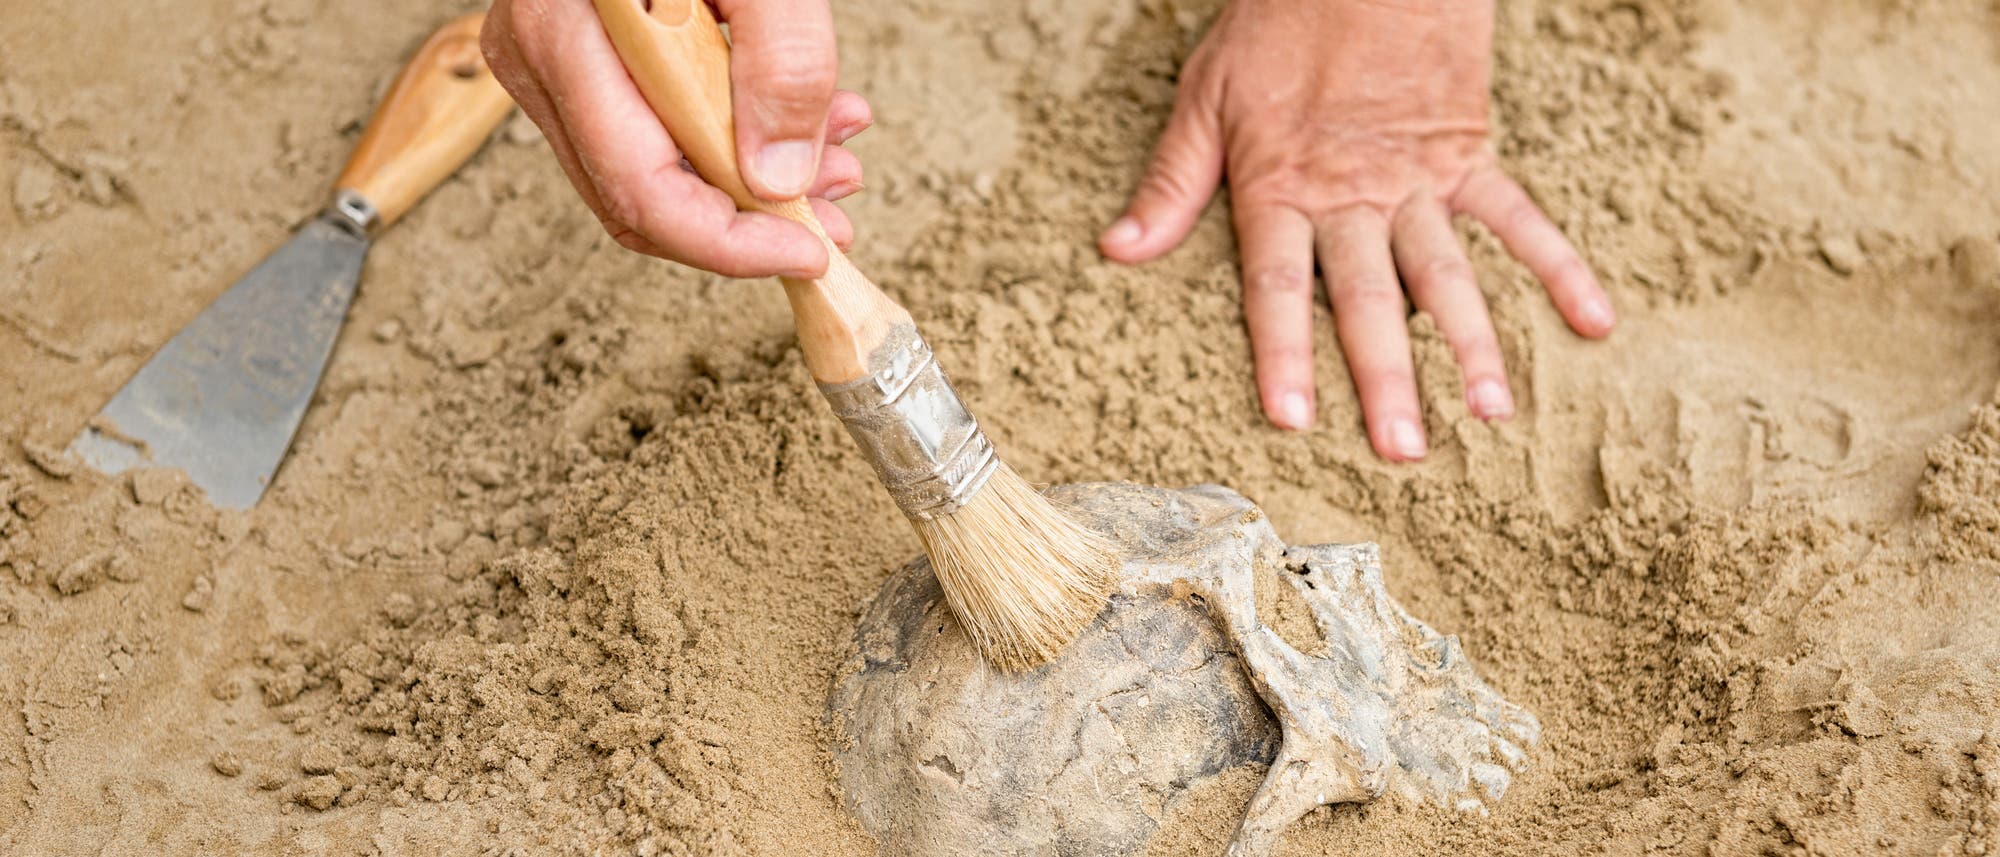 Blick auf einen teilweise vergrabenen Schädel, den zwei Hände vorsichtig frei legen